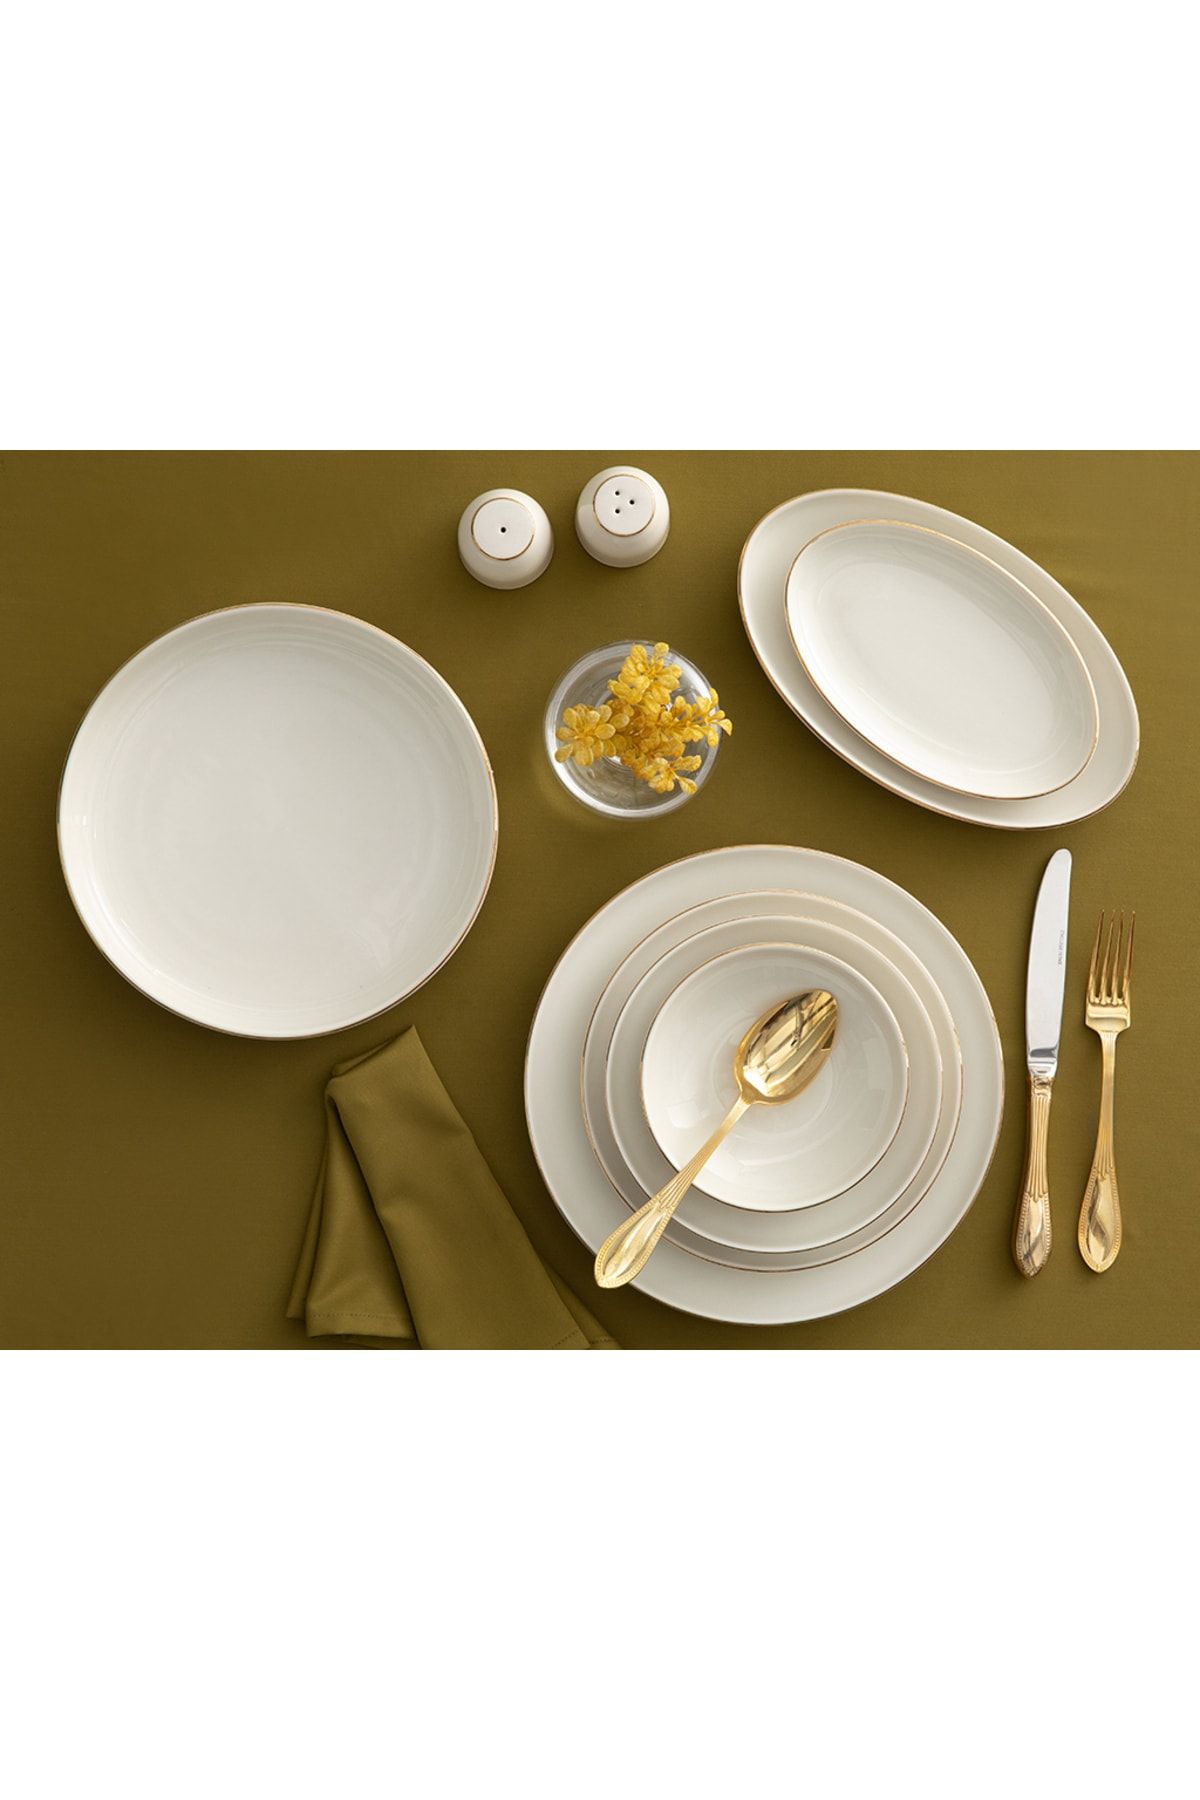 سرویس ظروف غذاخوری سفید چینی لبه طلایی مدل تورینو طرح ساده 54 تیکه انگلیش هوم English Home